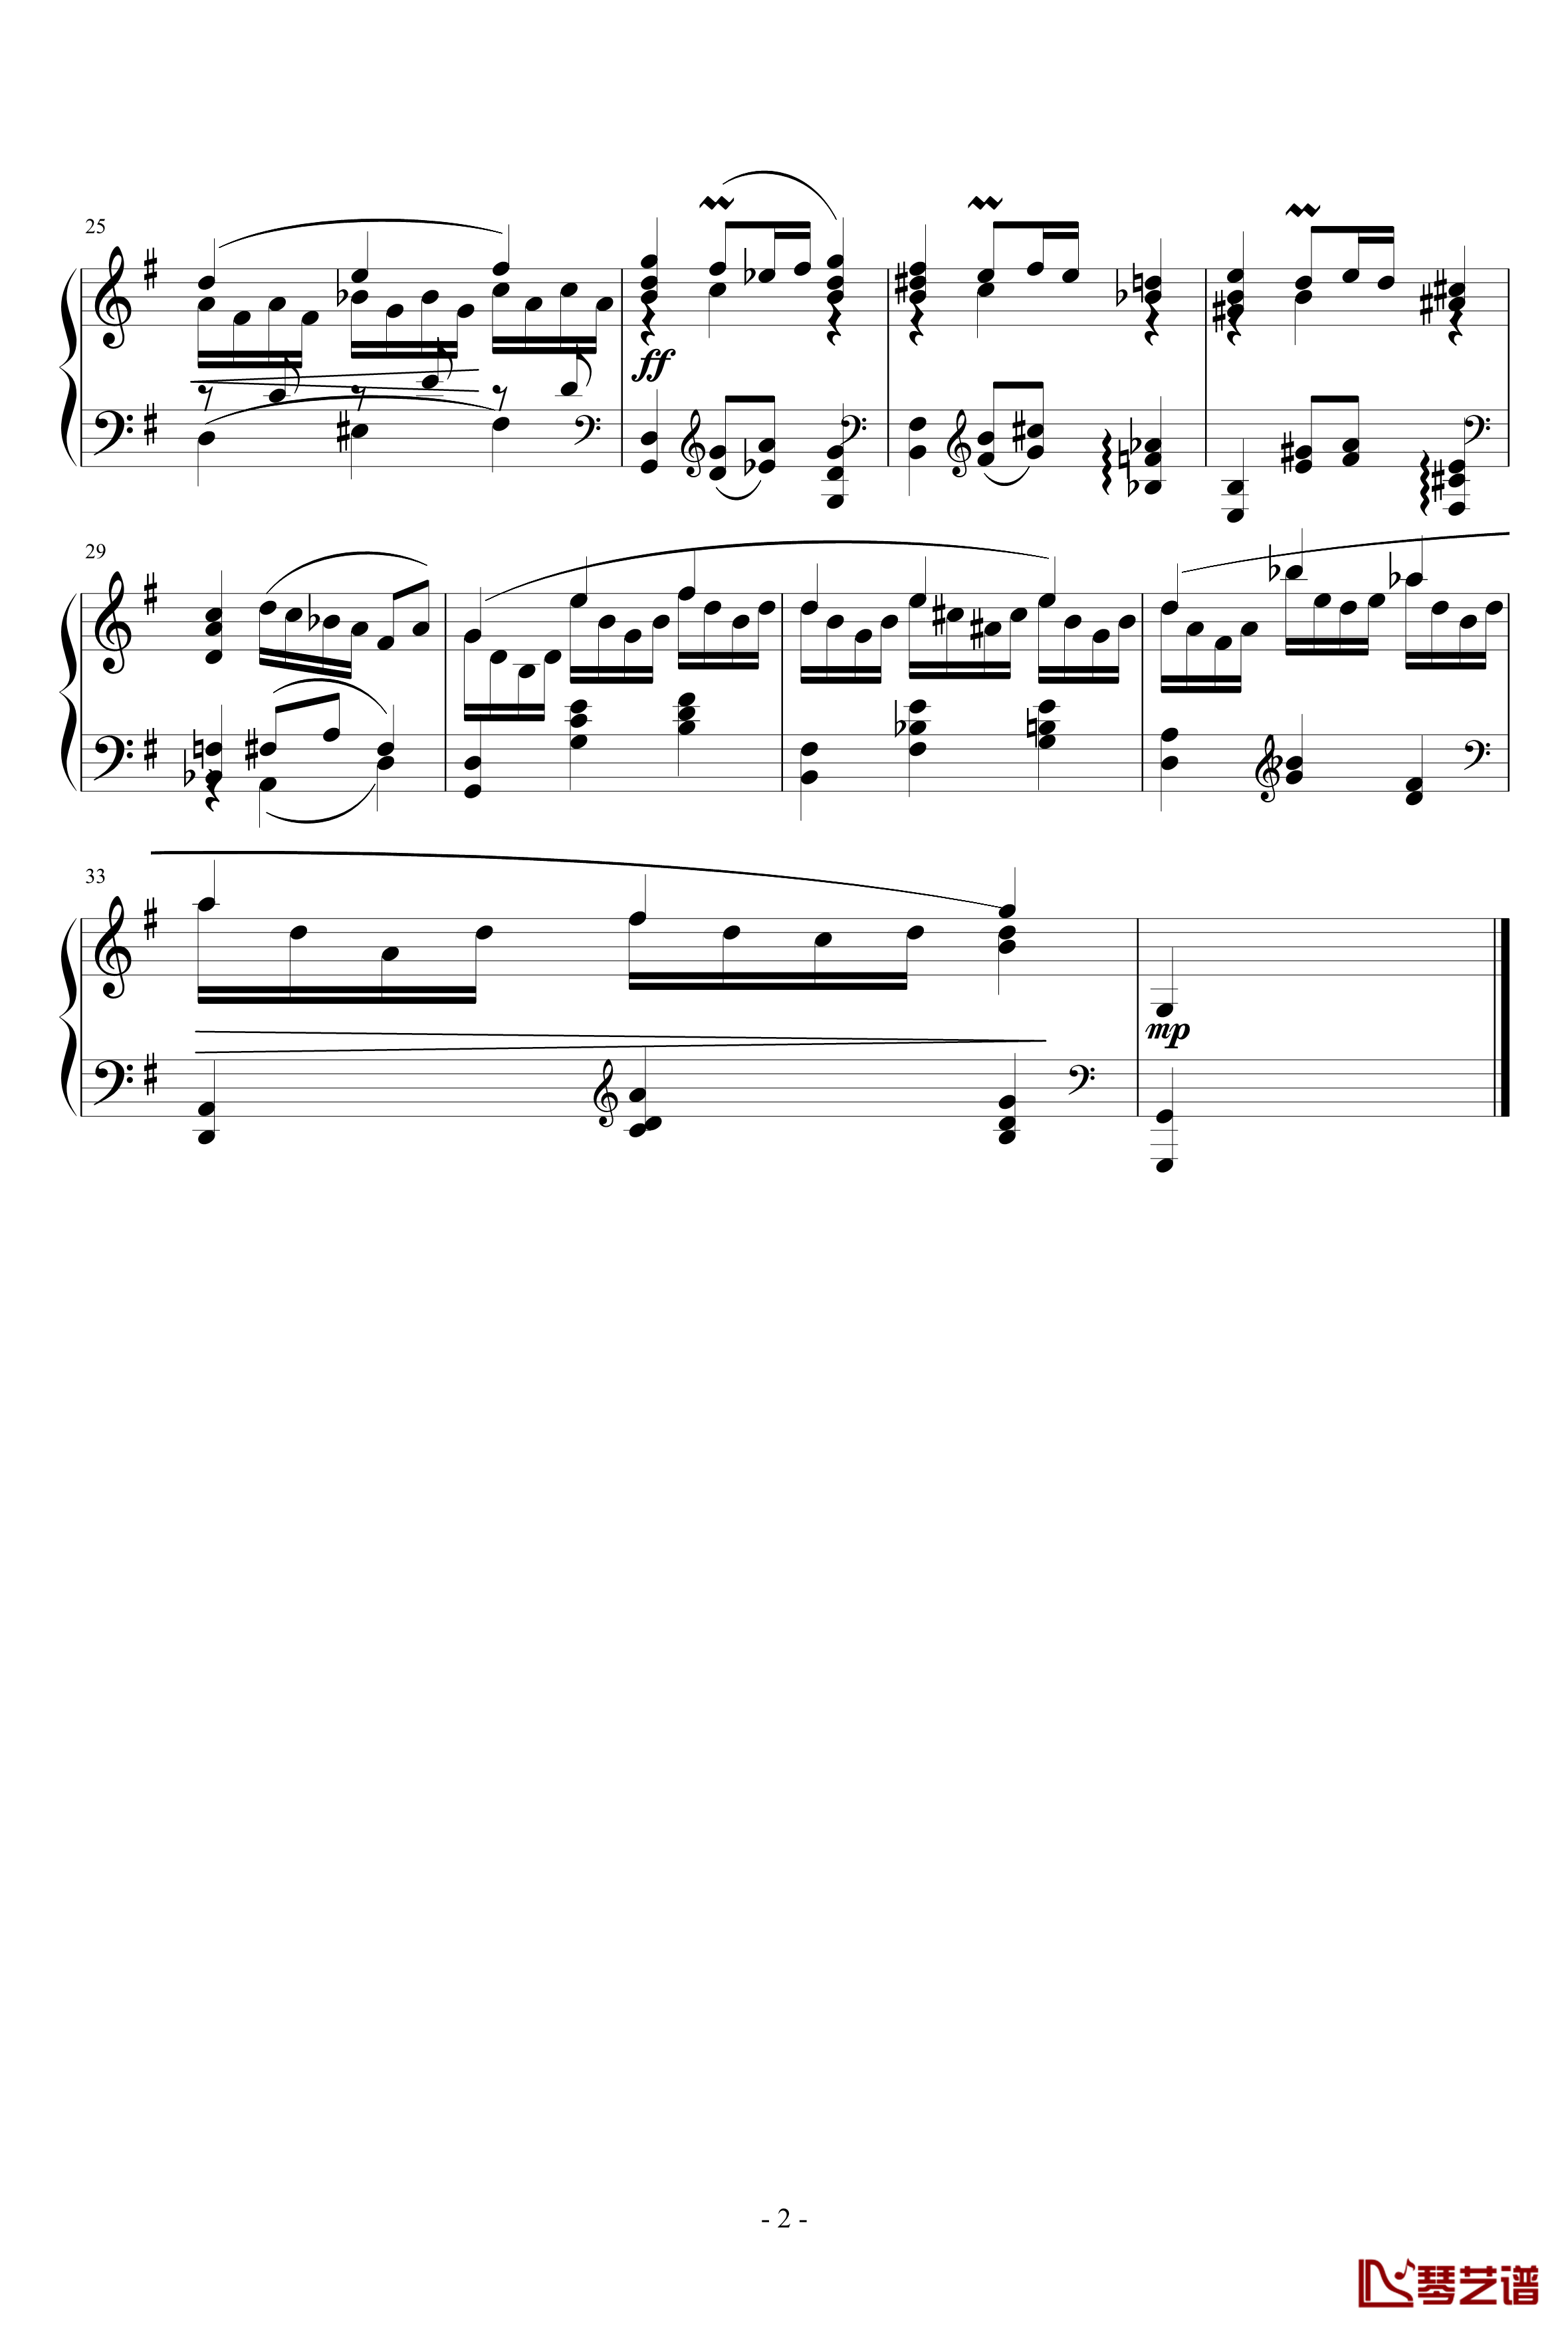 小步舞曲钢琴谱-ove版-一个球2